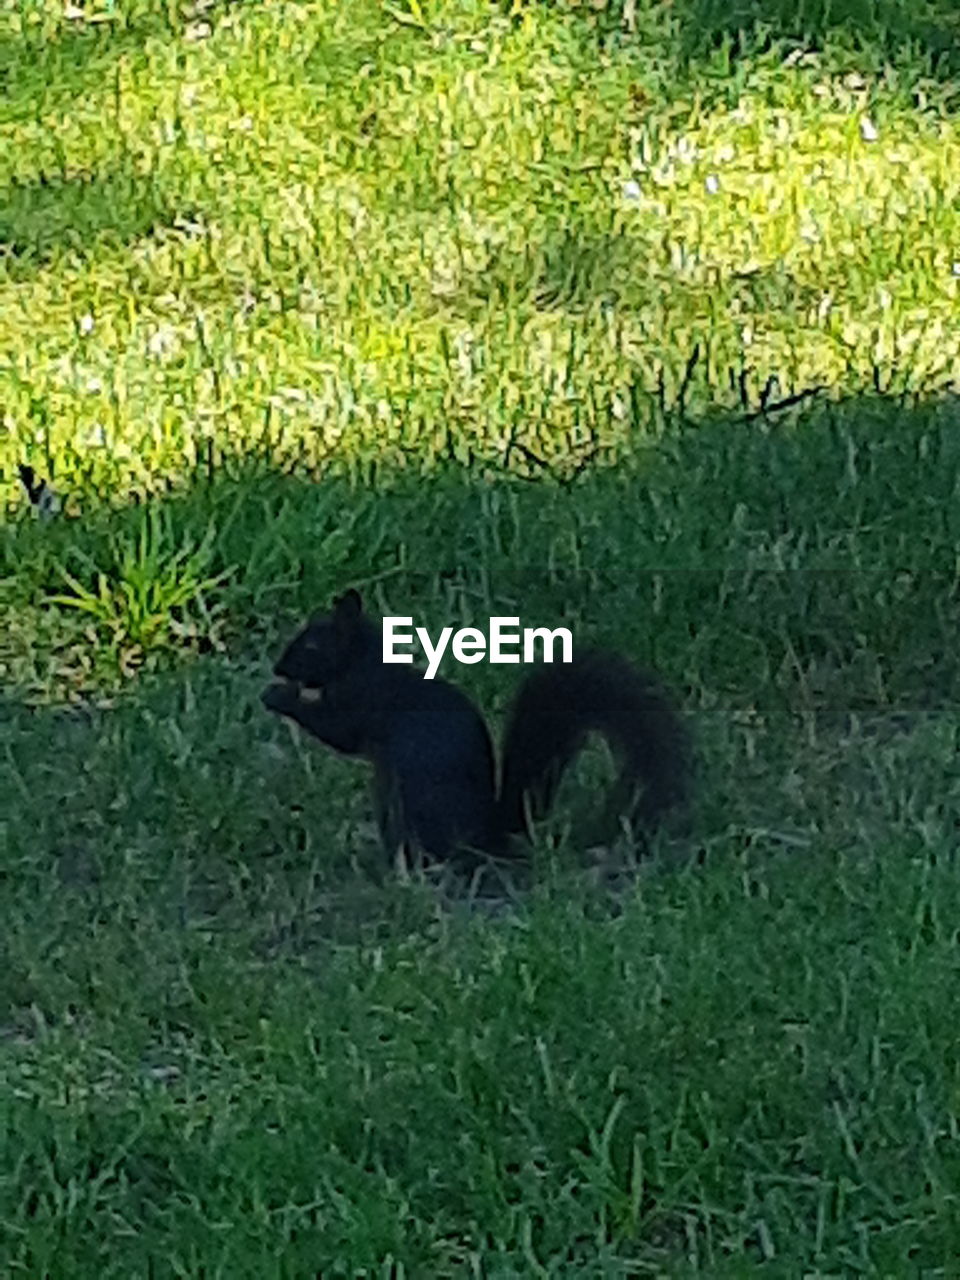 BLACK CAT ON GRASS